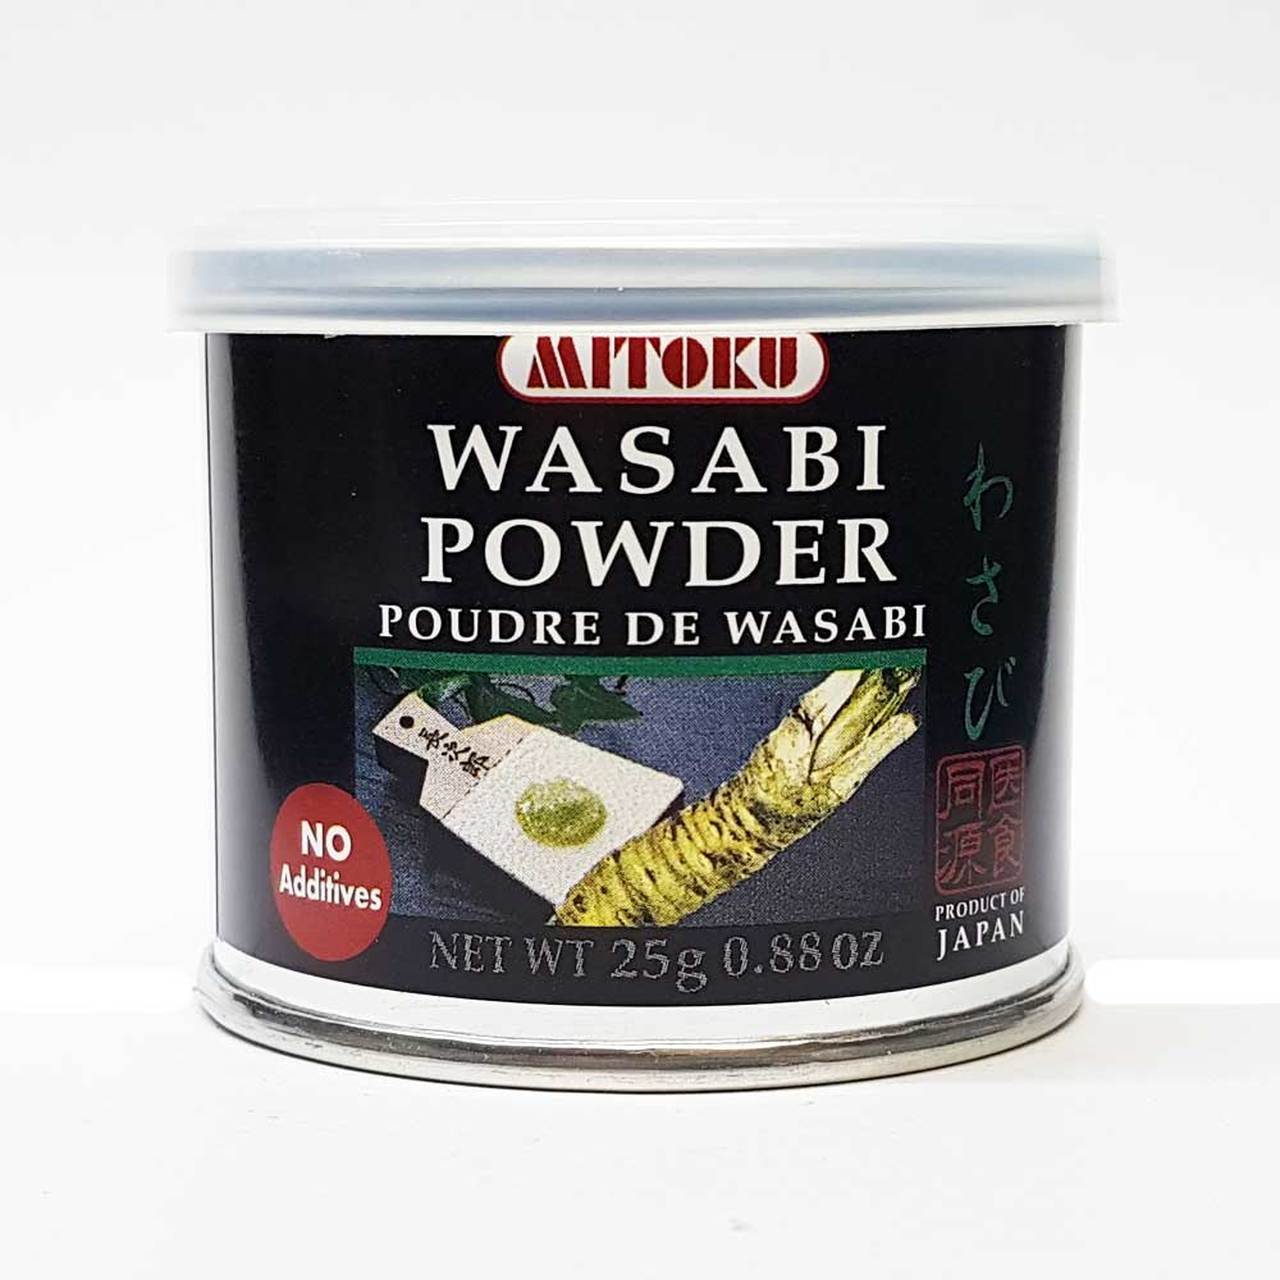 Poudre de wasabi - Mitoku